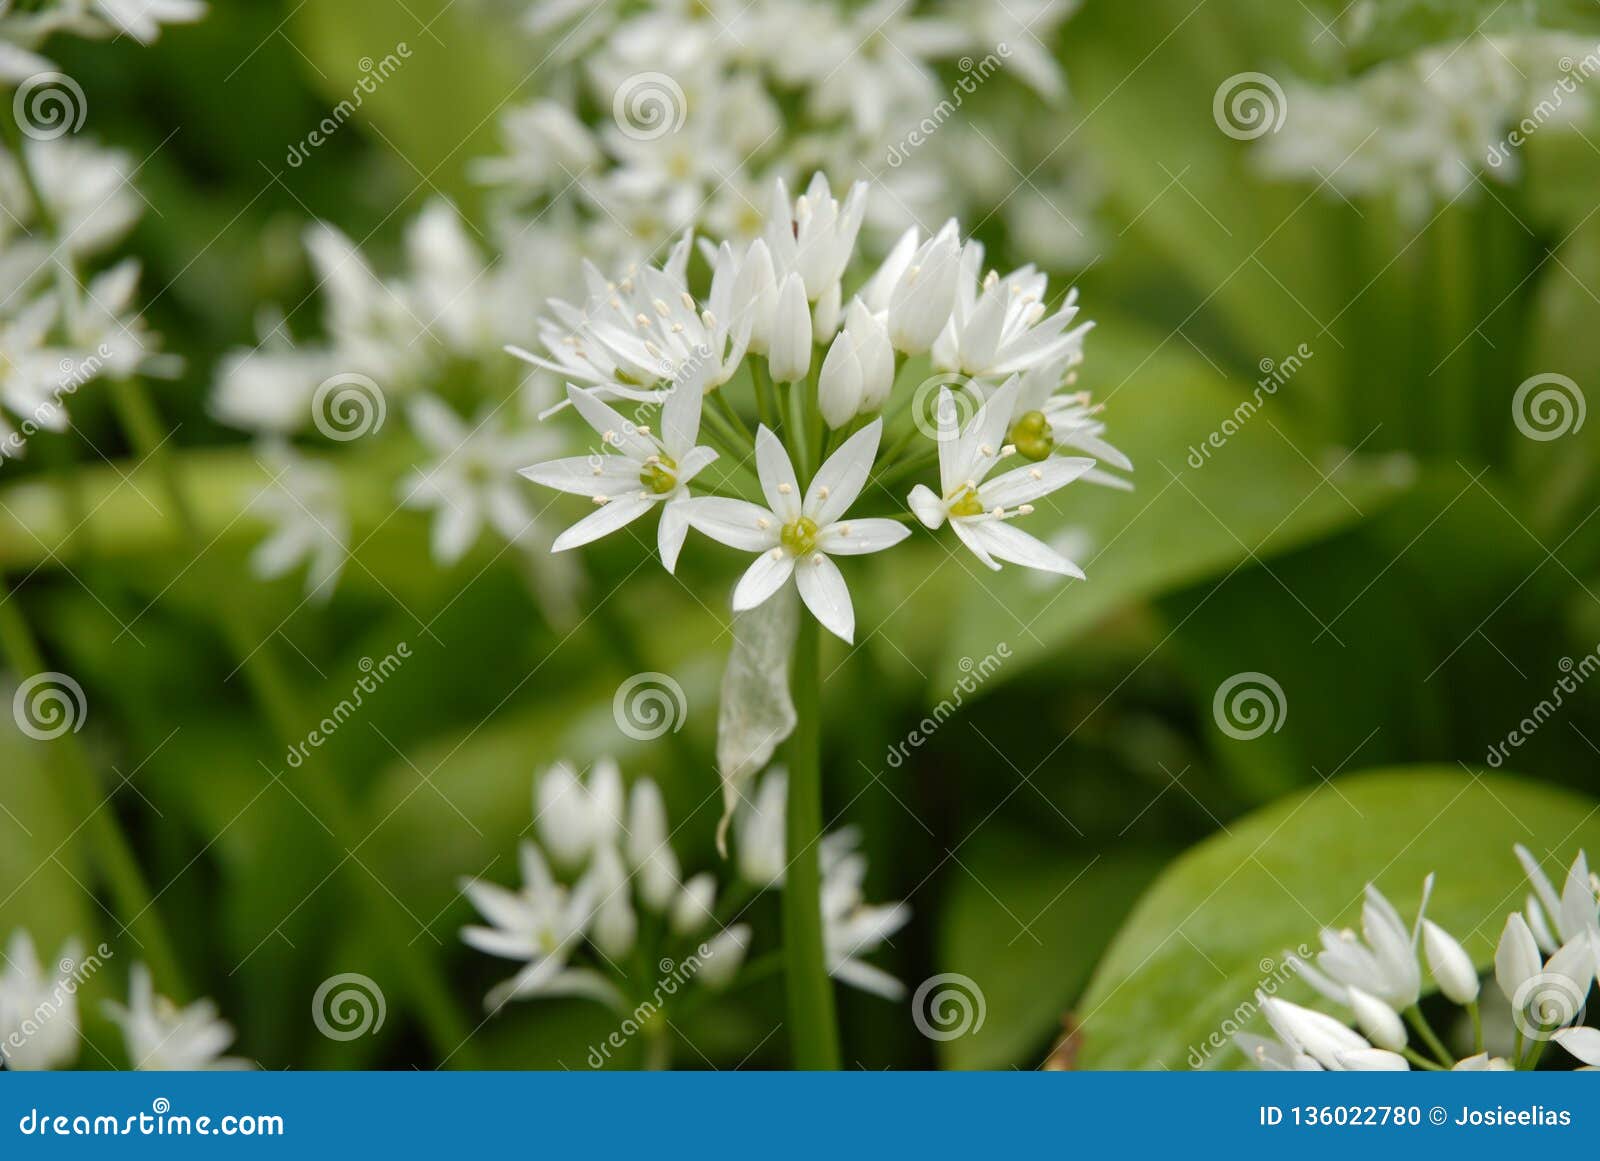 Wild Garlic Allium Ursinum in British Woodland Stock Photo   Image ...